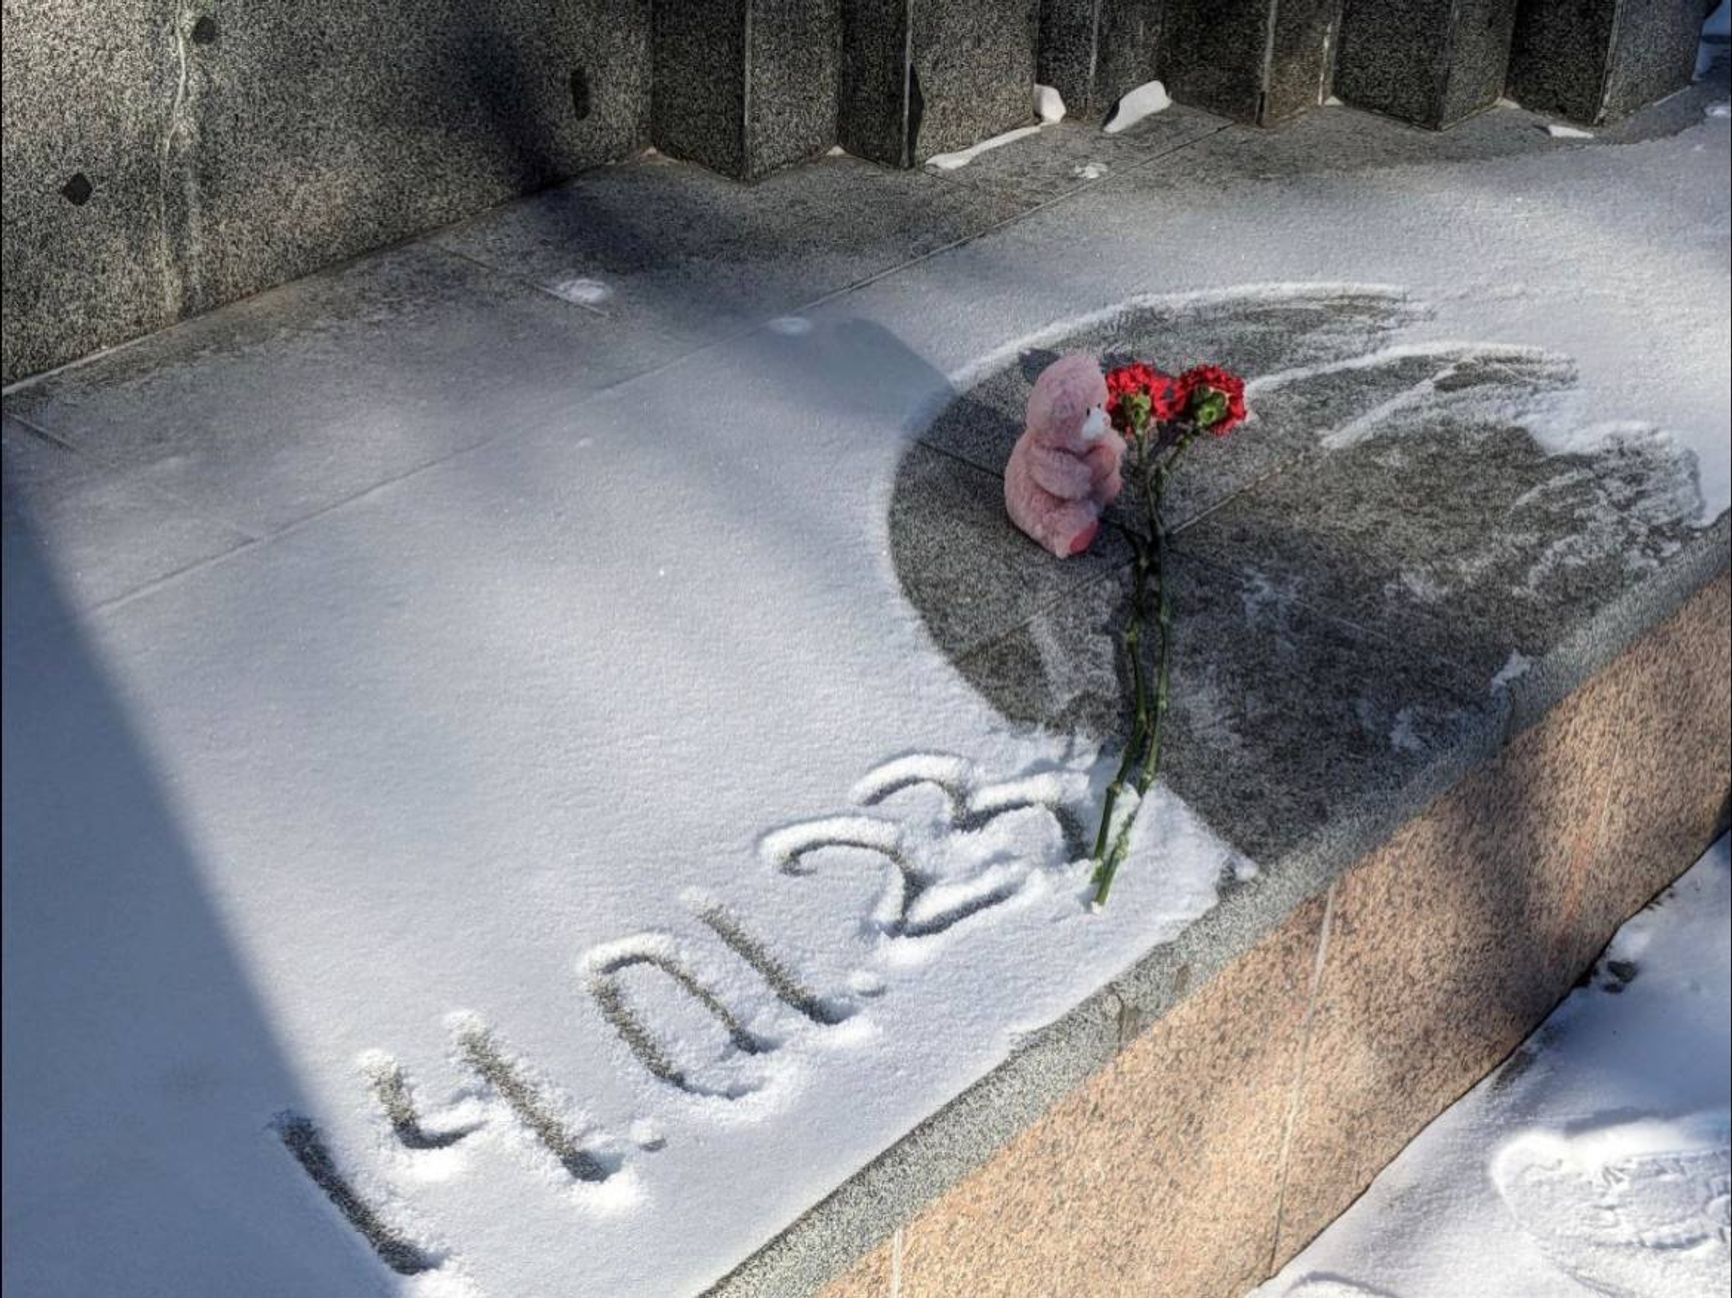 Стихийные мемориалы в память о жертвах ракетного удара по Днепру появились в десятках городов по всей России